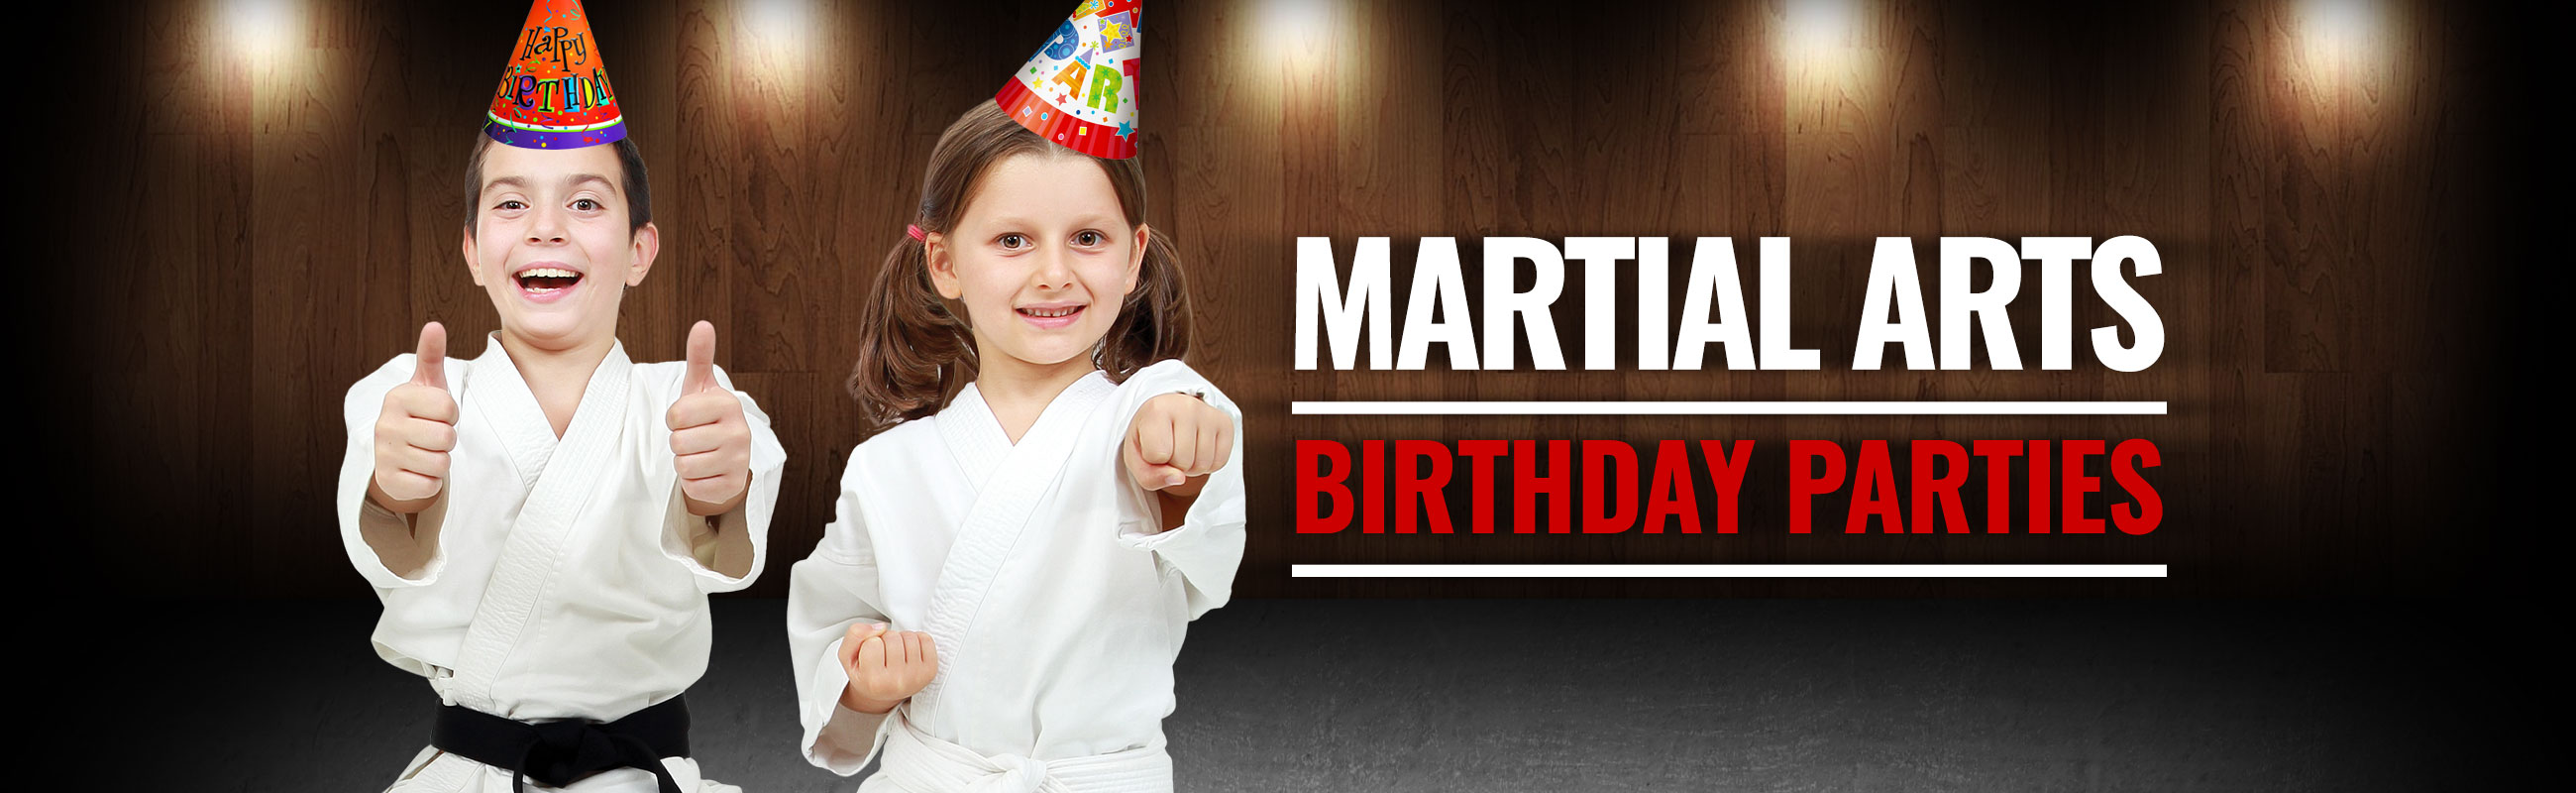 martial arts birthday parties